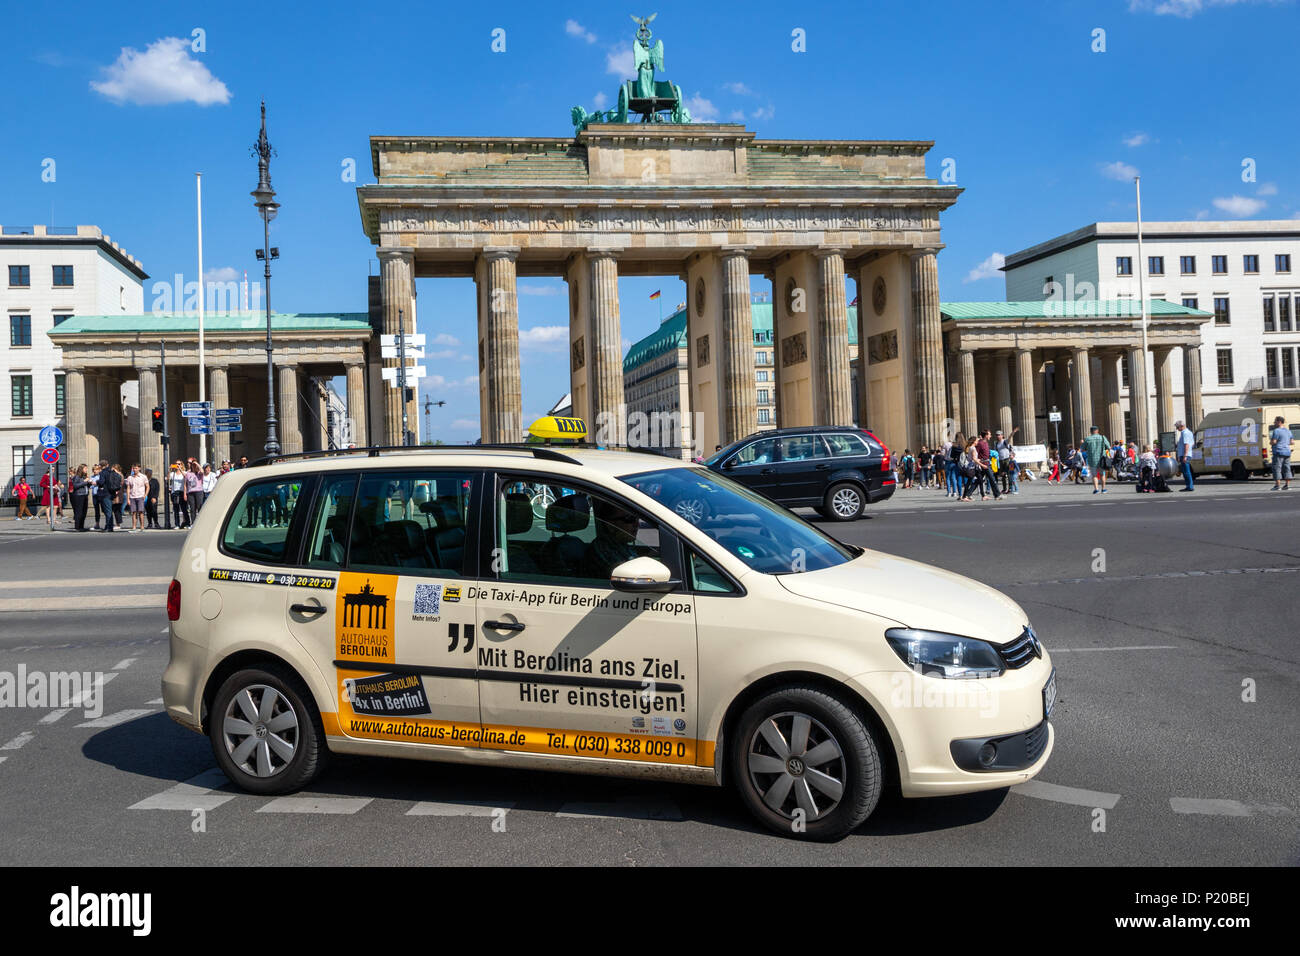 Berlino, Germania - 28 Aprile 2018: tedesco con Taxi la guida passato storico Brandenburger Tor. Foto Stock